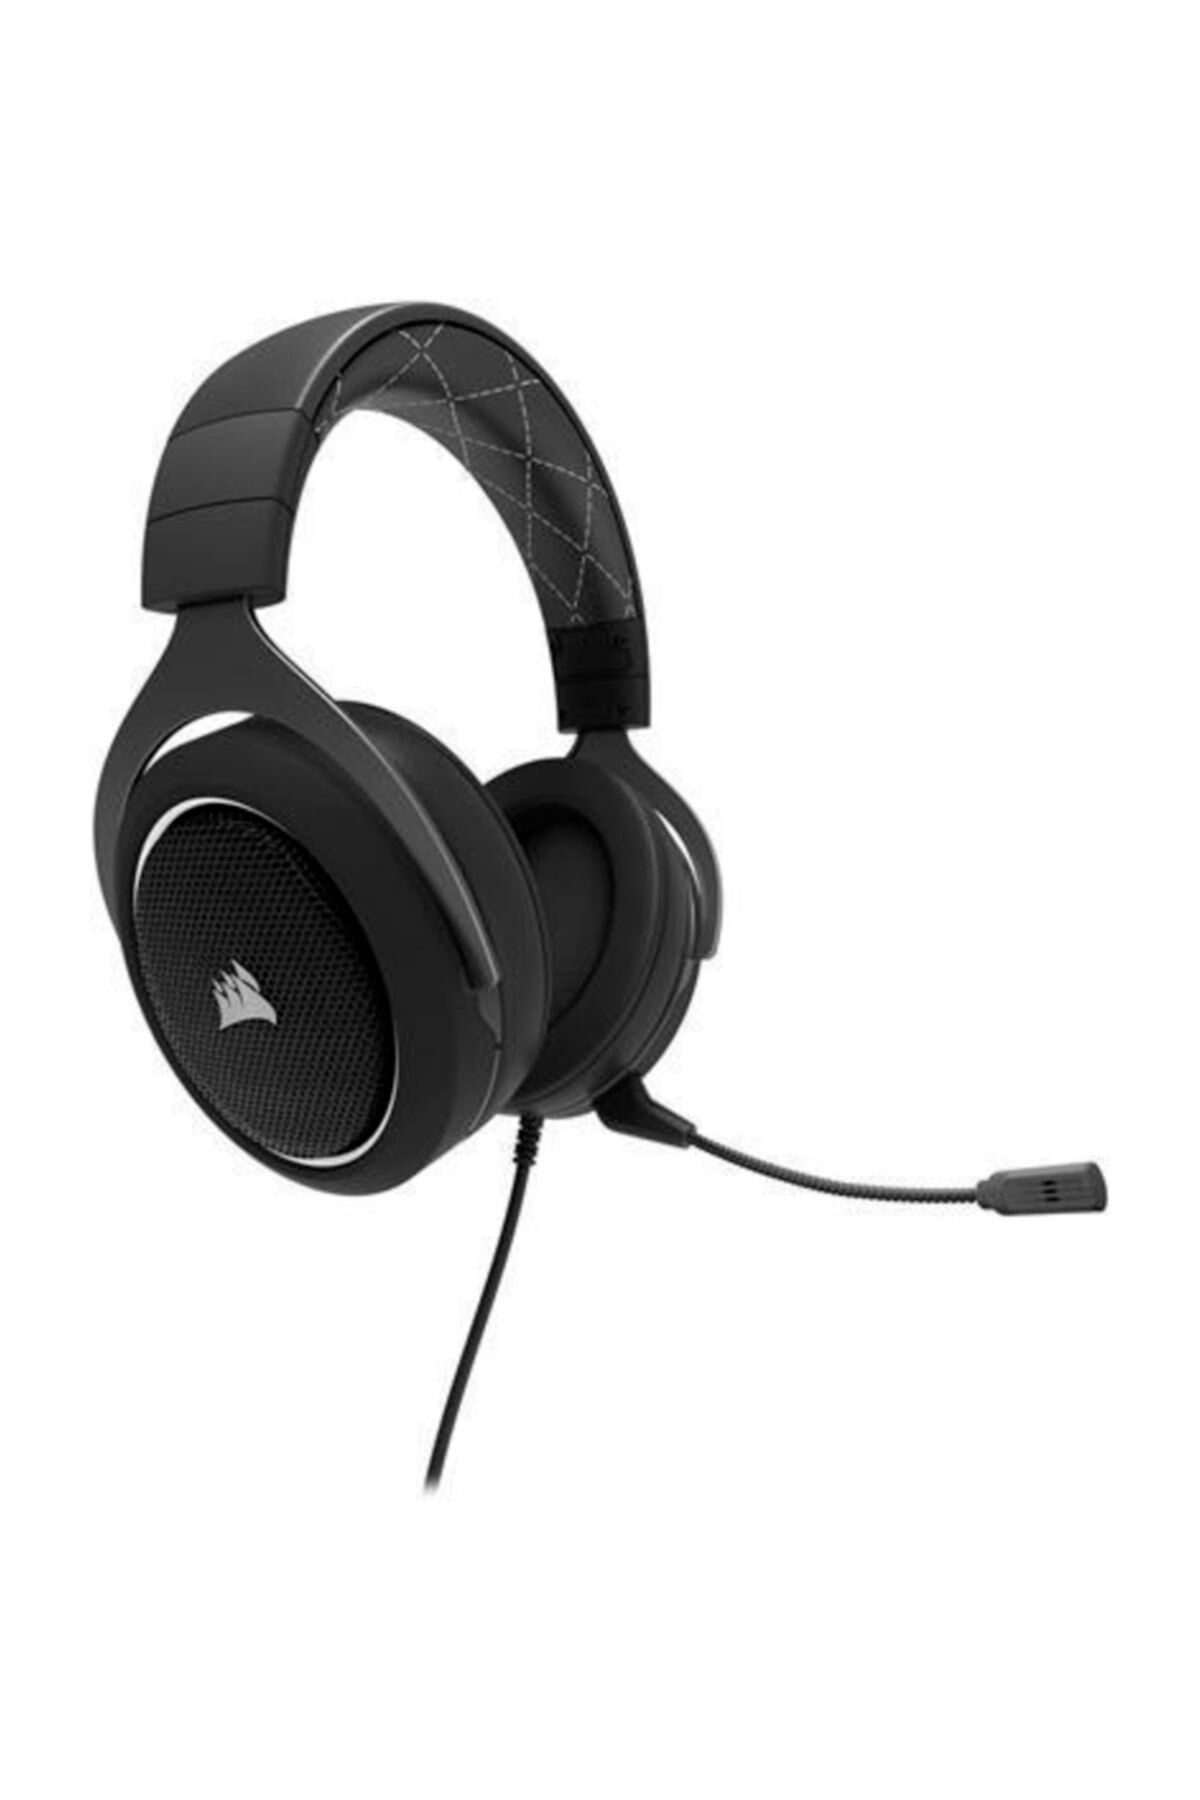 Corsair HS60 7.1 Ses Kartlı Gaming Beyaz Kulaklık (CA-9011174-EU)